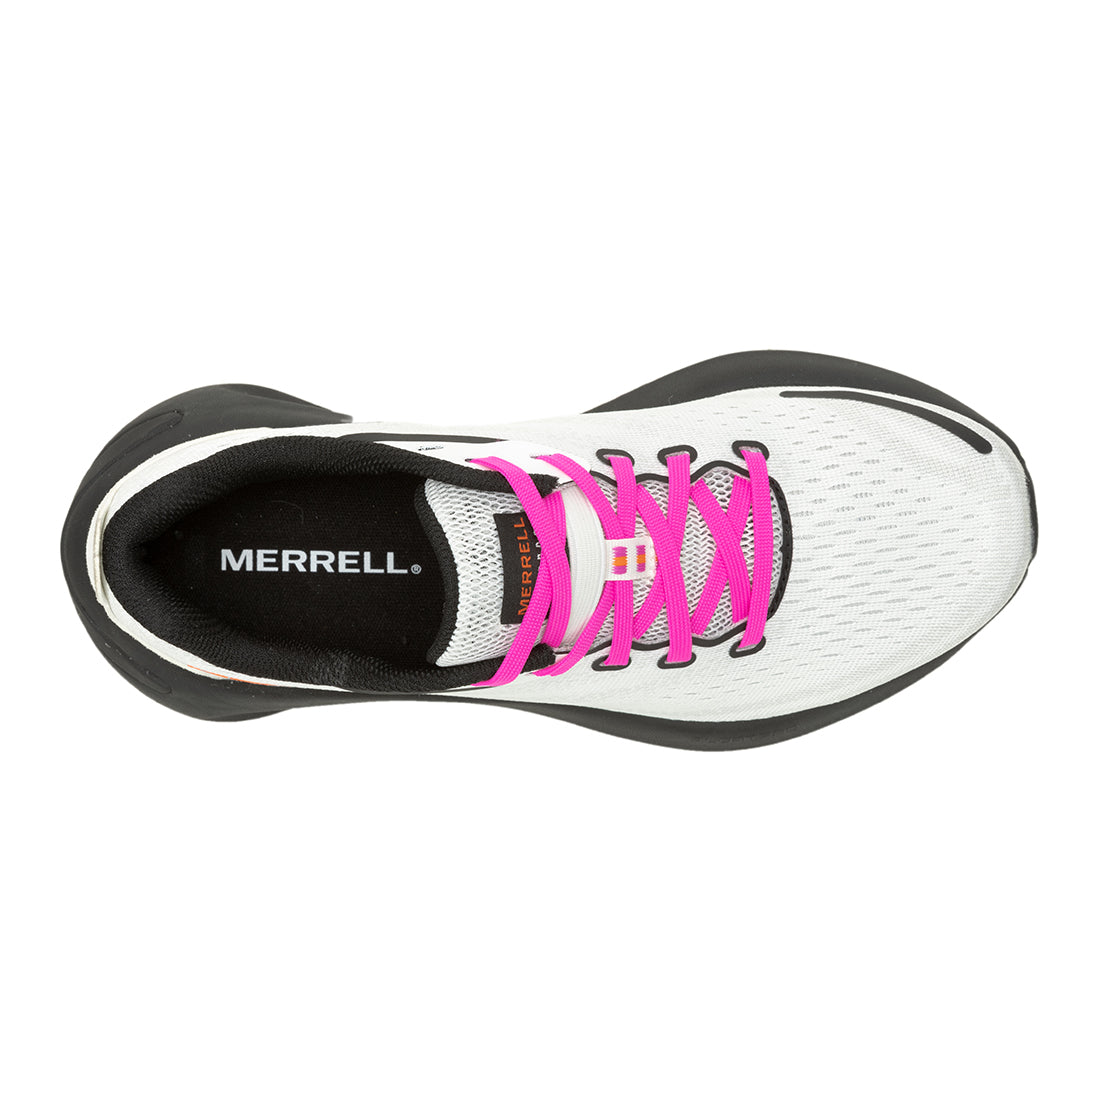 Morphlite – White/Multi Womens Trail Running Shoes